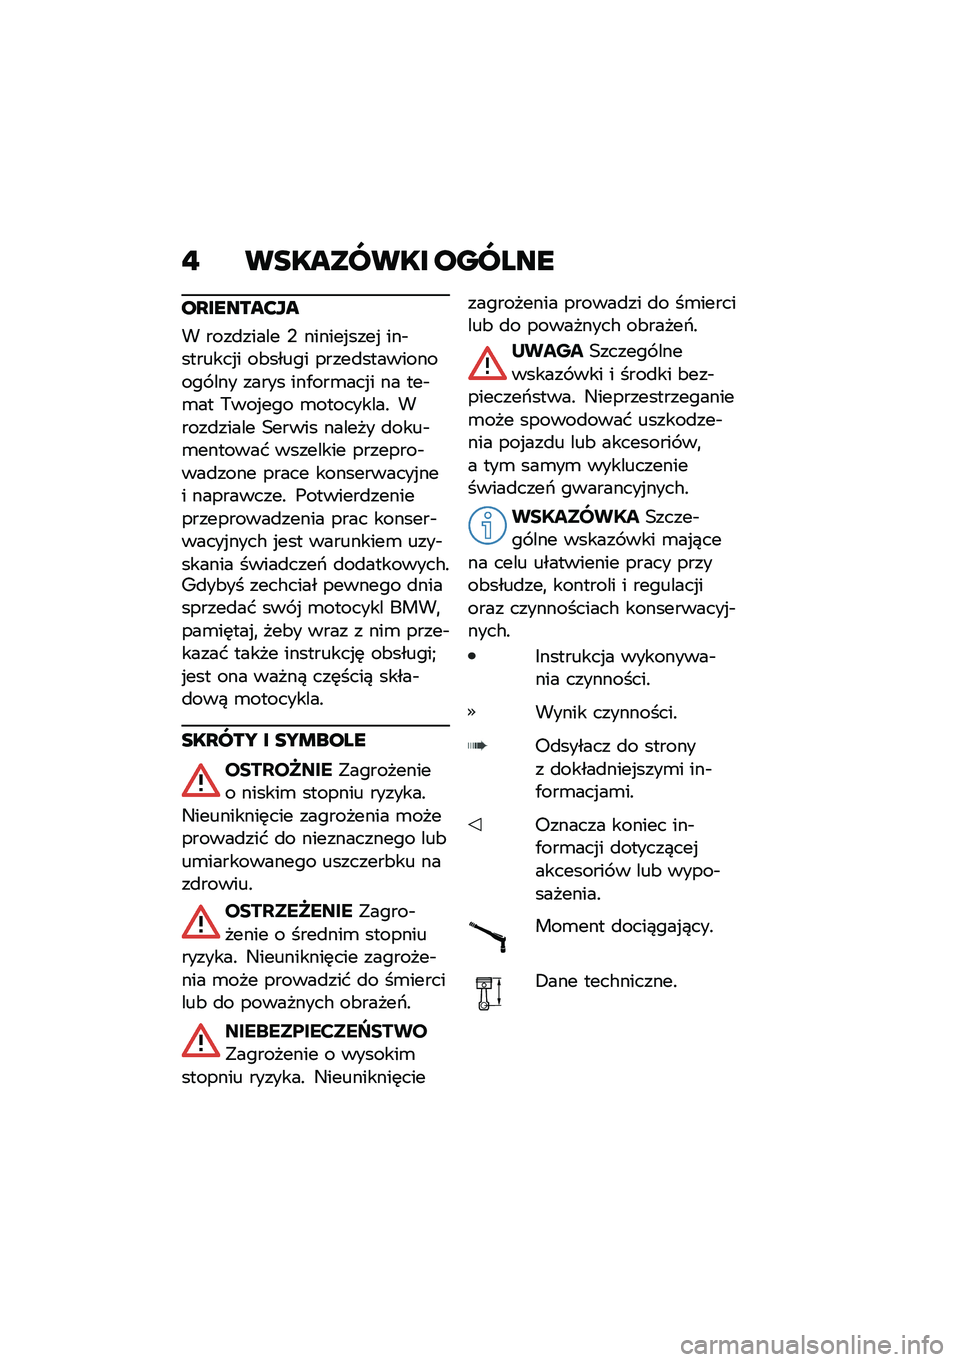 BMW MOTORRAD R NINE T URVAN G/S 2020  Instrukcja obsługi (in Polish) �" ��������� ������
��Q������?��
� ����
����� �, ������%����% ���$�������%� ��&����� �����
����������� ��� ����� ���.��